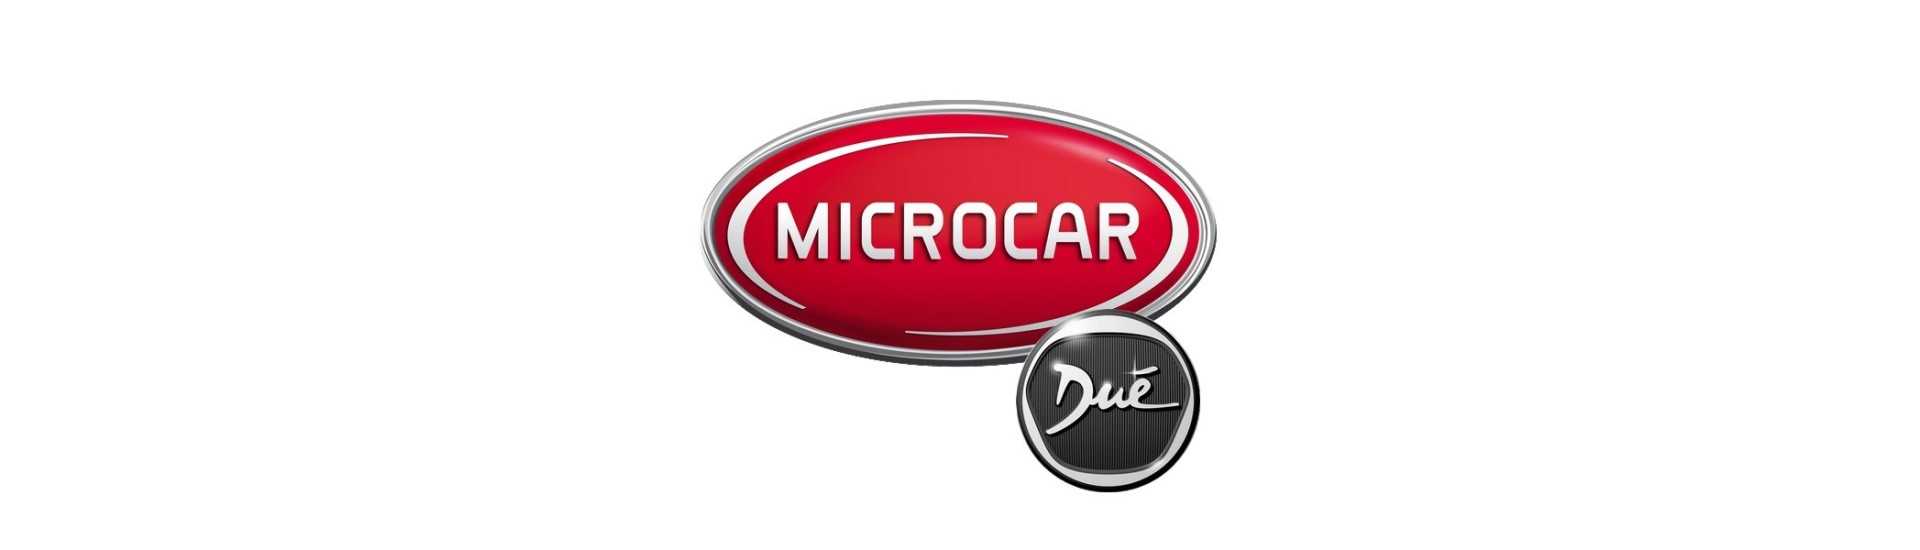 Cel mai bun preț pentru o mașină fără permis Microcar Dué